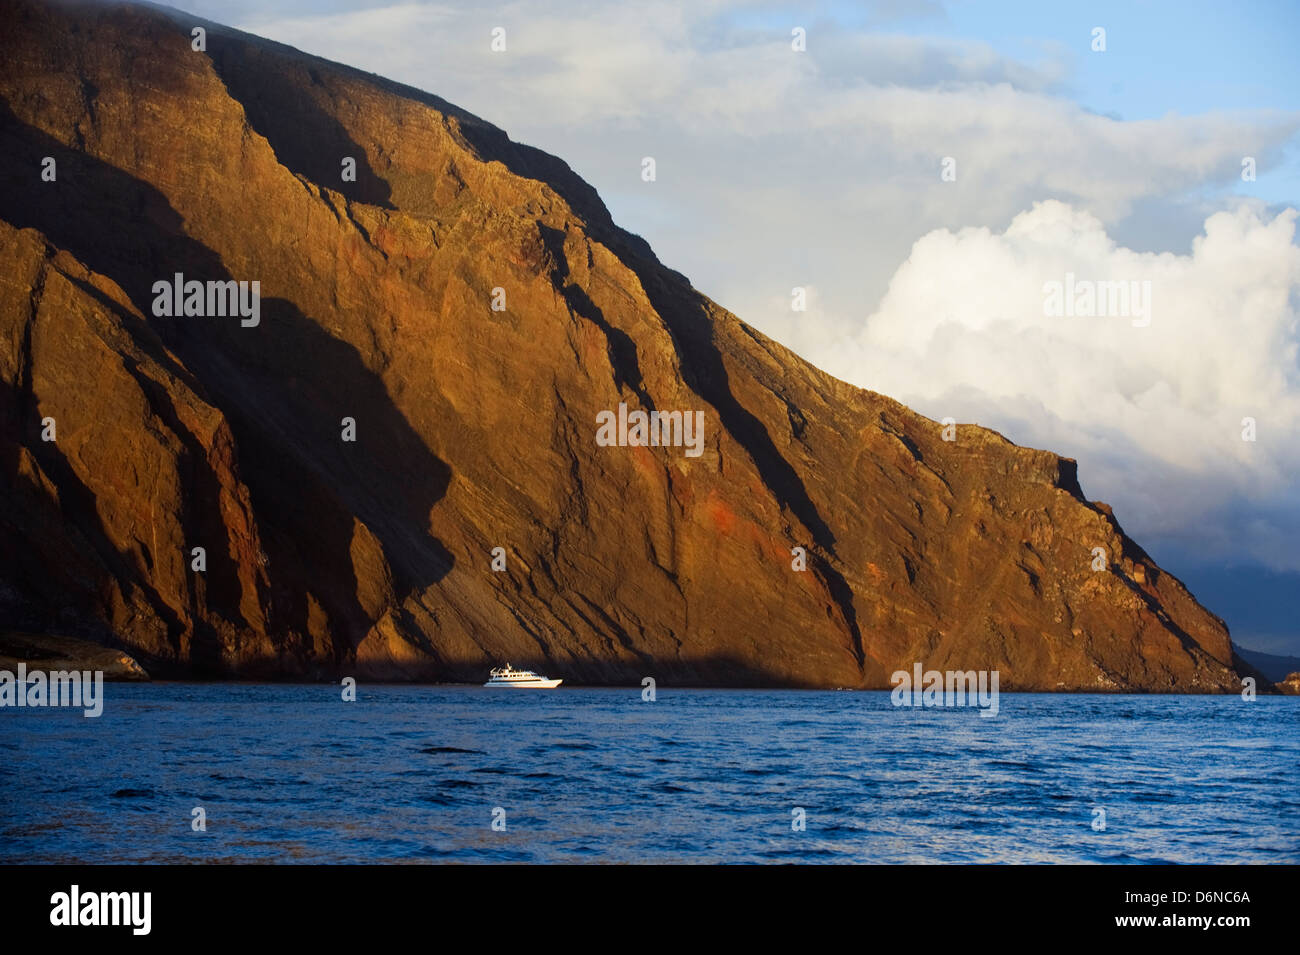 Galapagos Islands, Unesco site, Ecuador, South America Stock Photo